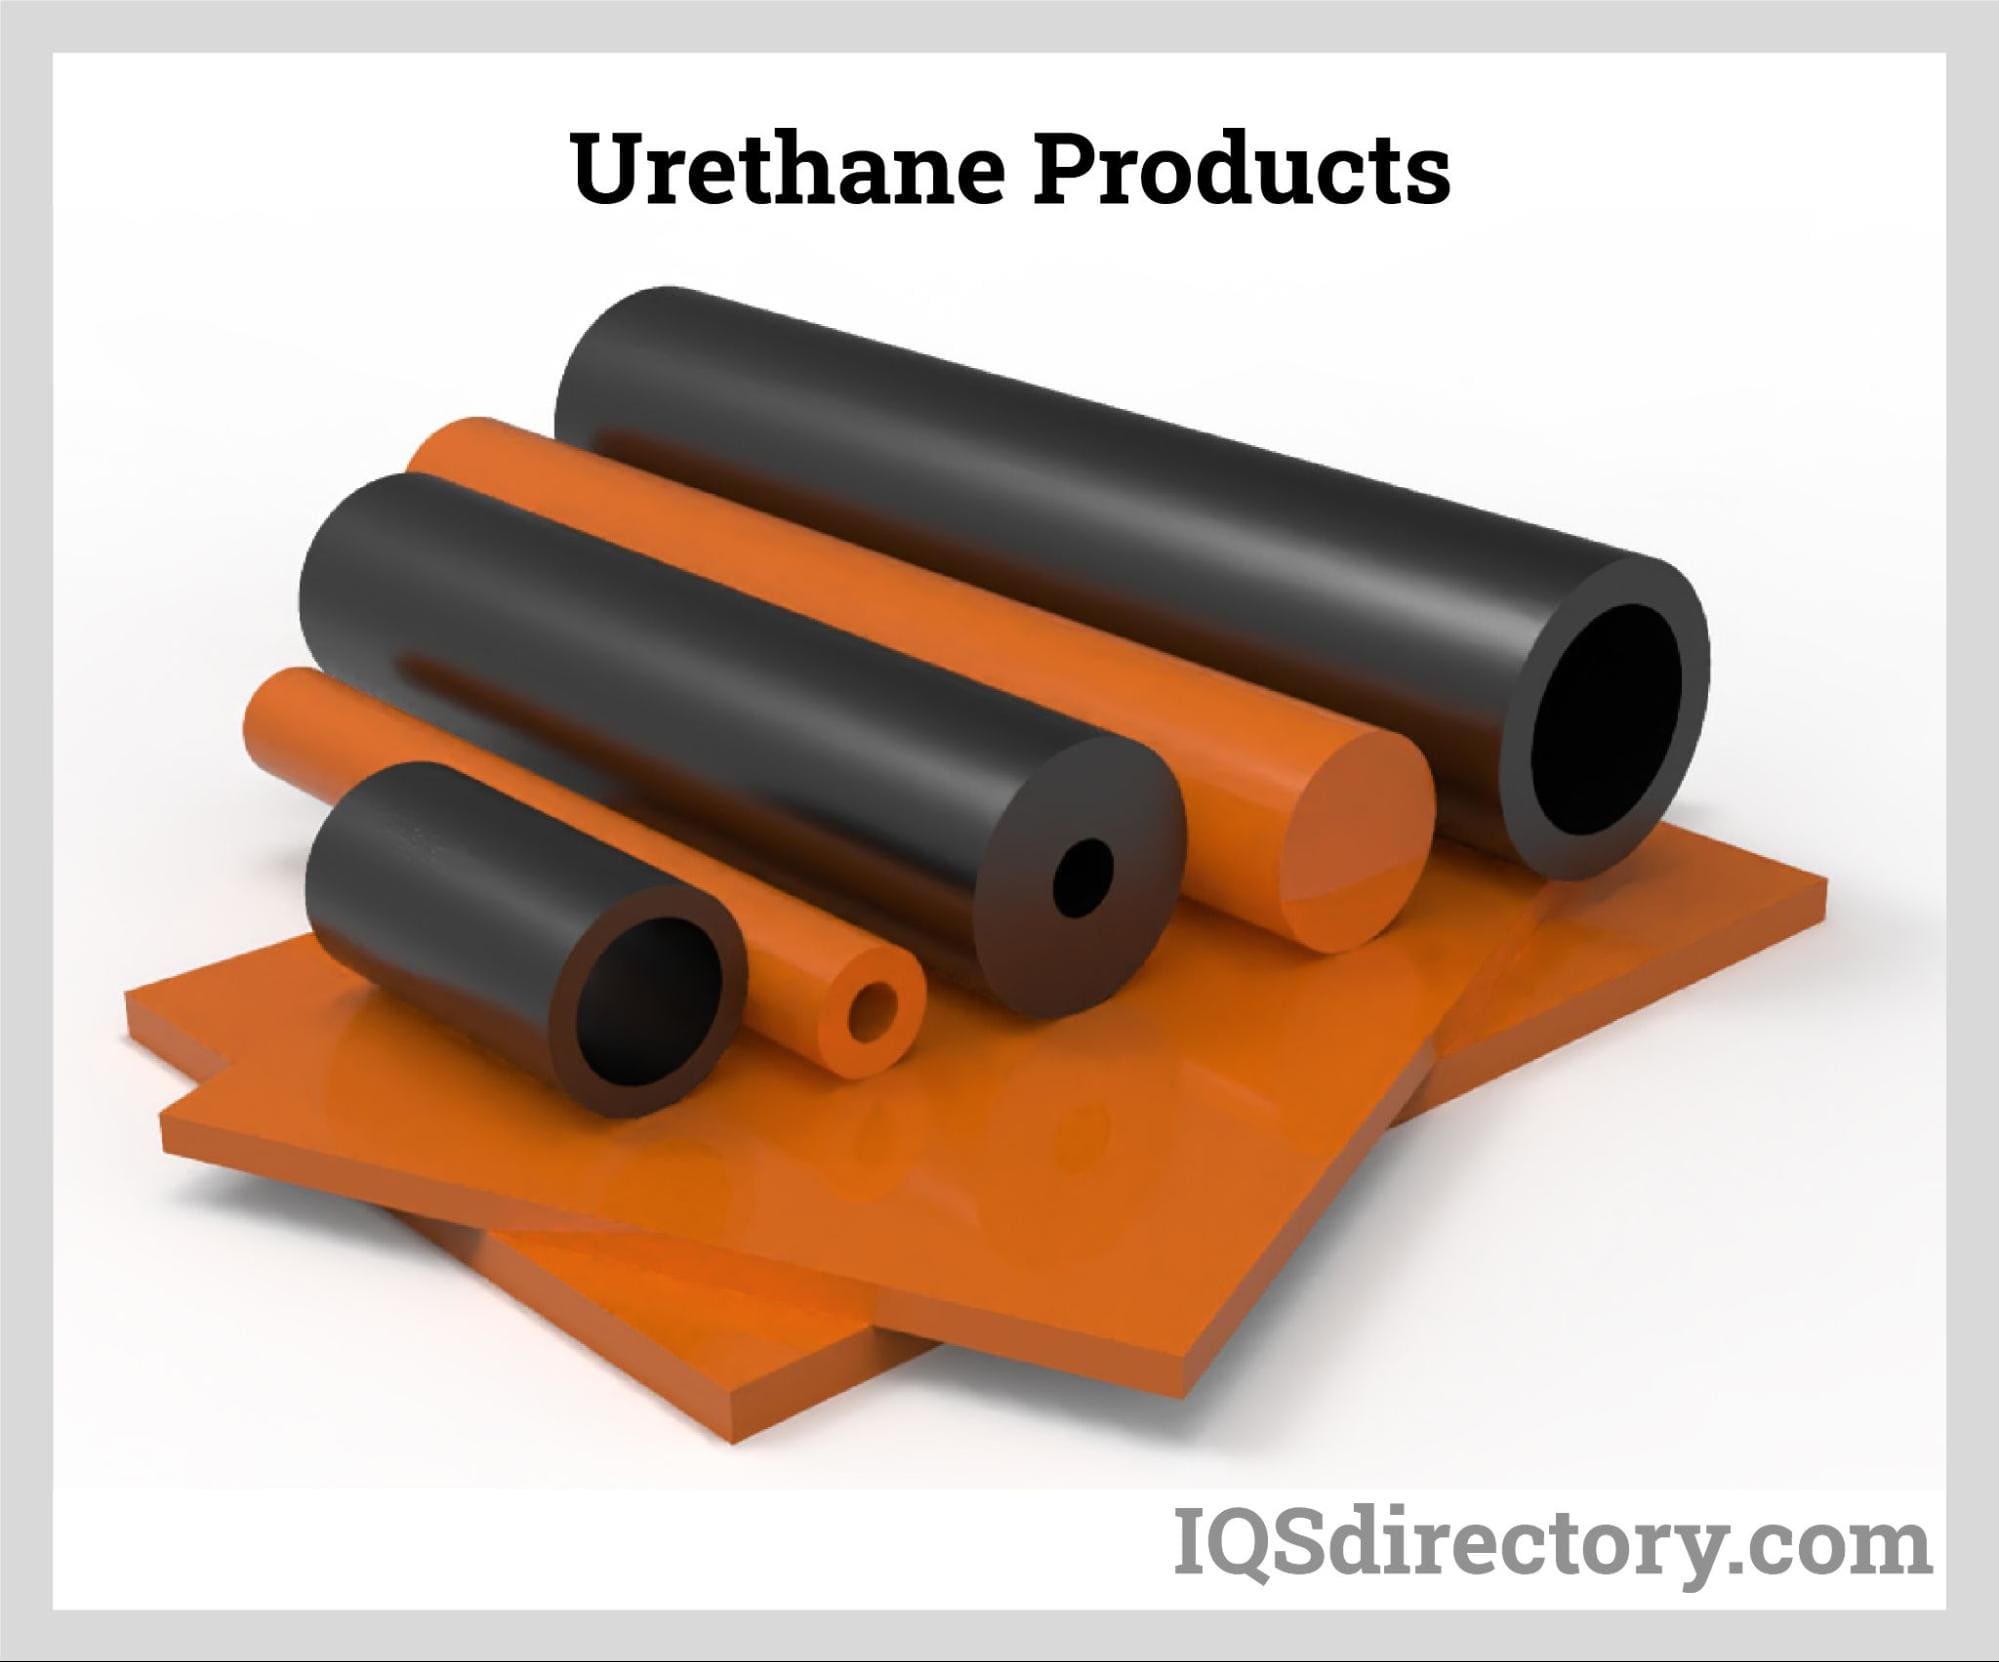 Urethane Products